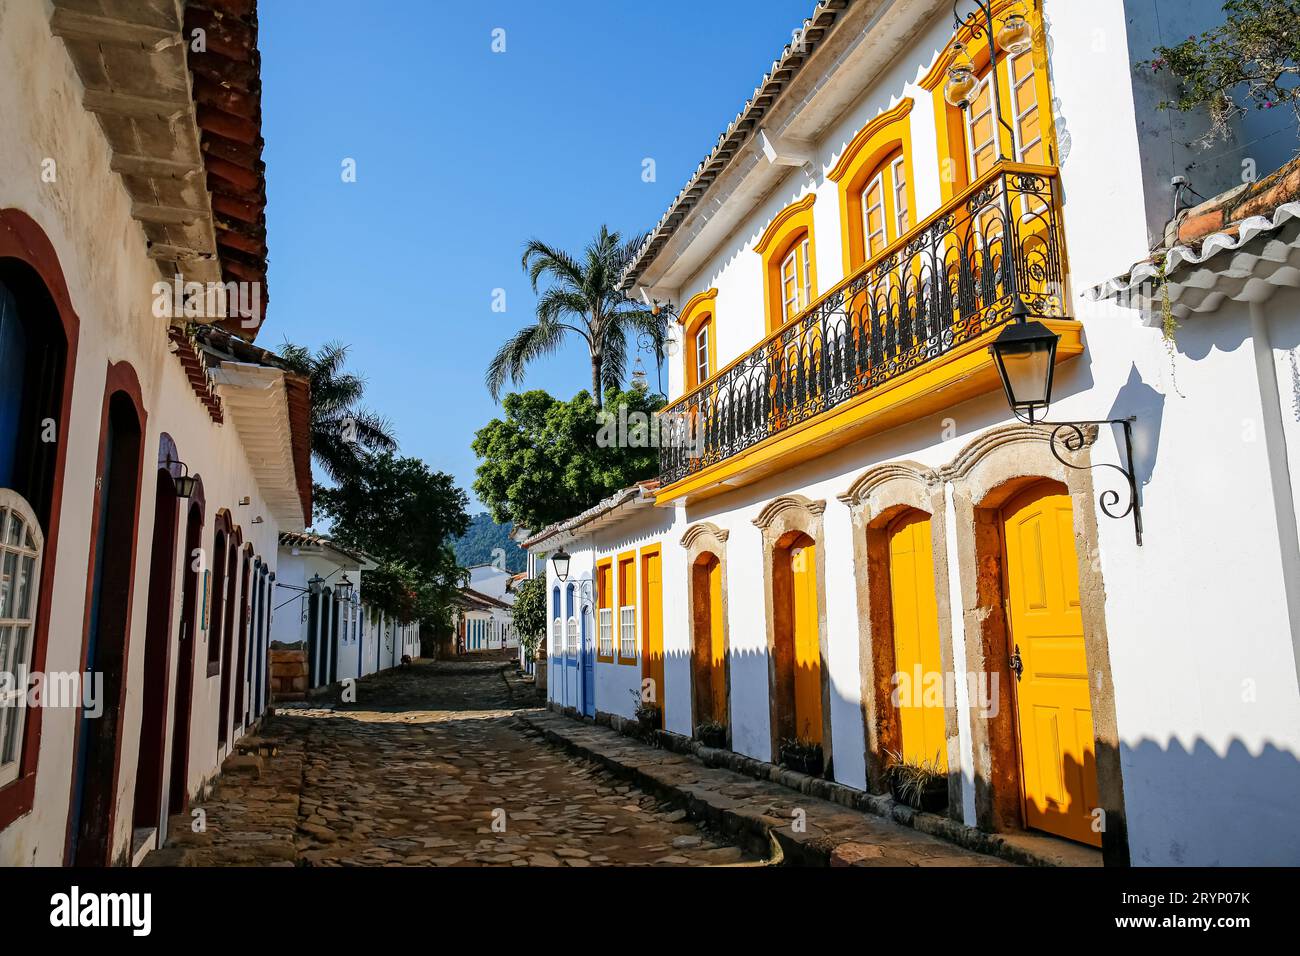 Rue étroite avec un magnifique bâtiment colonial avec portes en bois jaune, fenêtres et balustrade en fin d'après-midi soleil, histori Banque D'Images